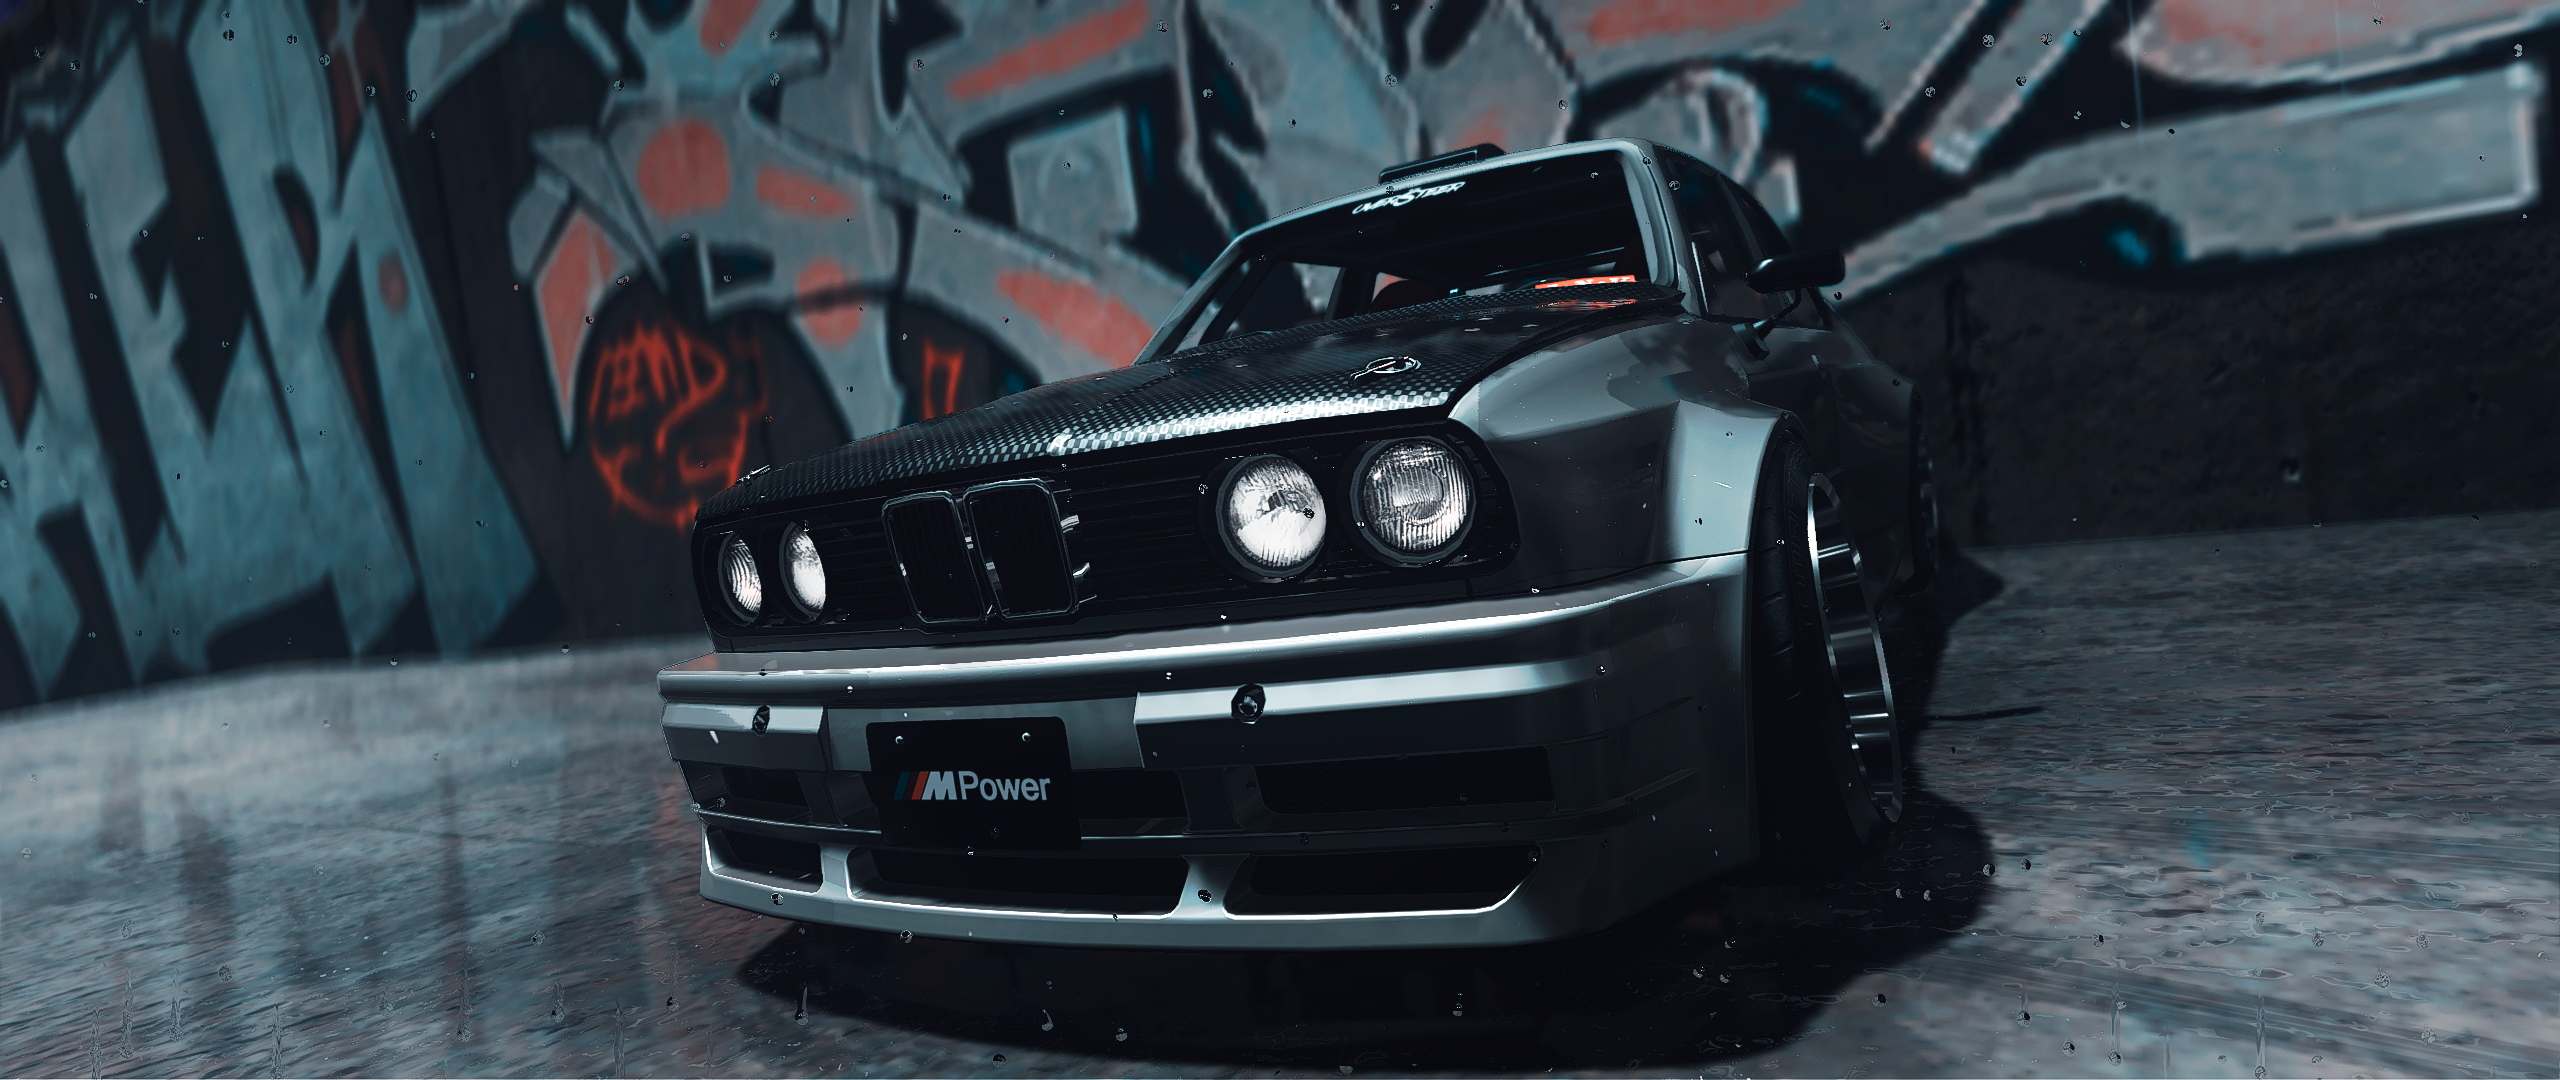 bmw drift cars wallpaper